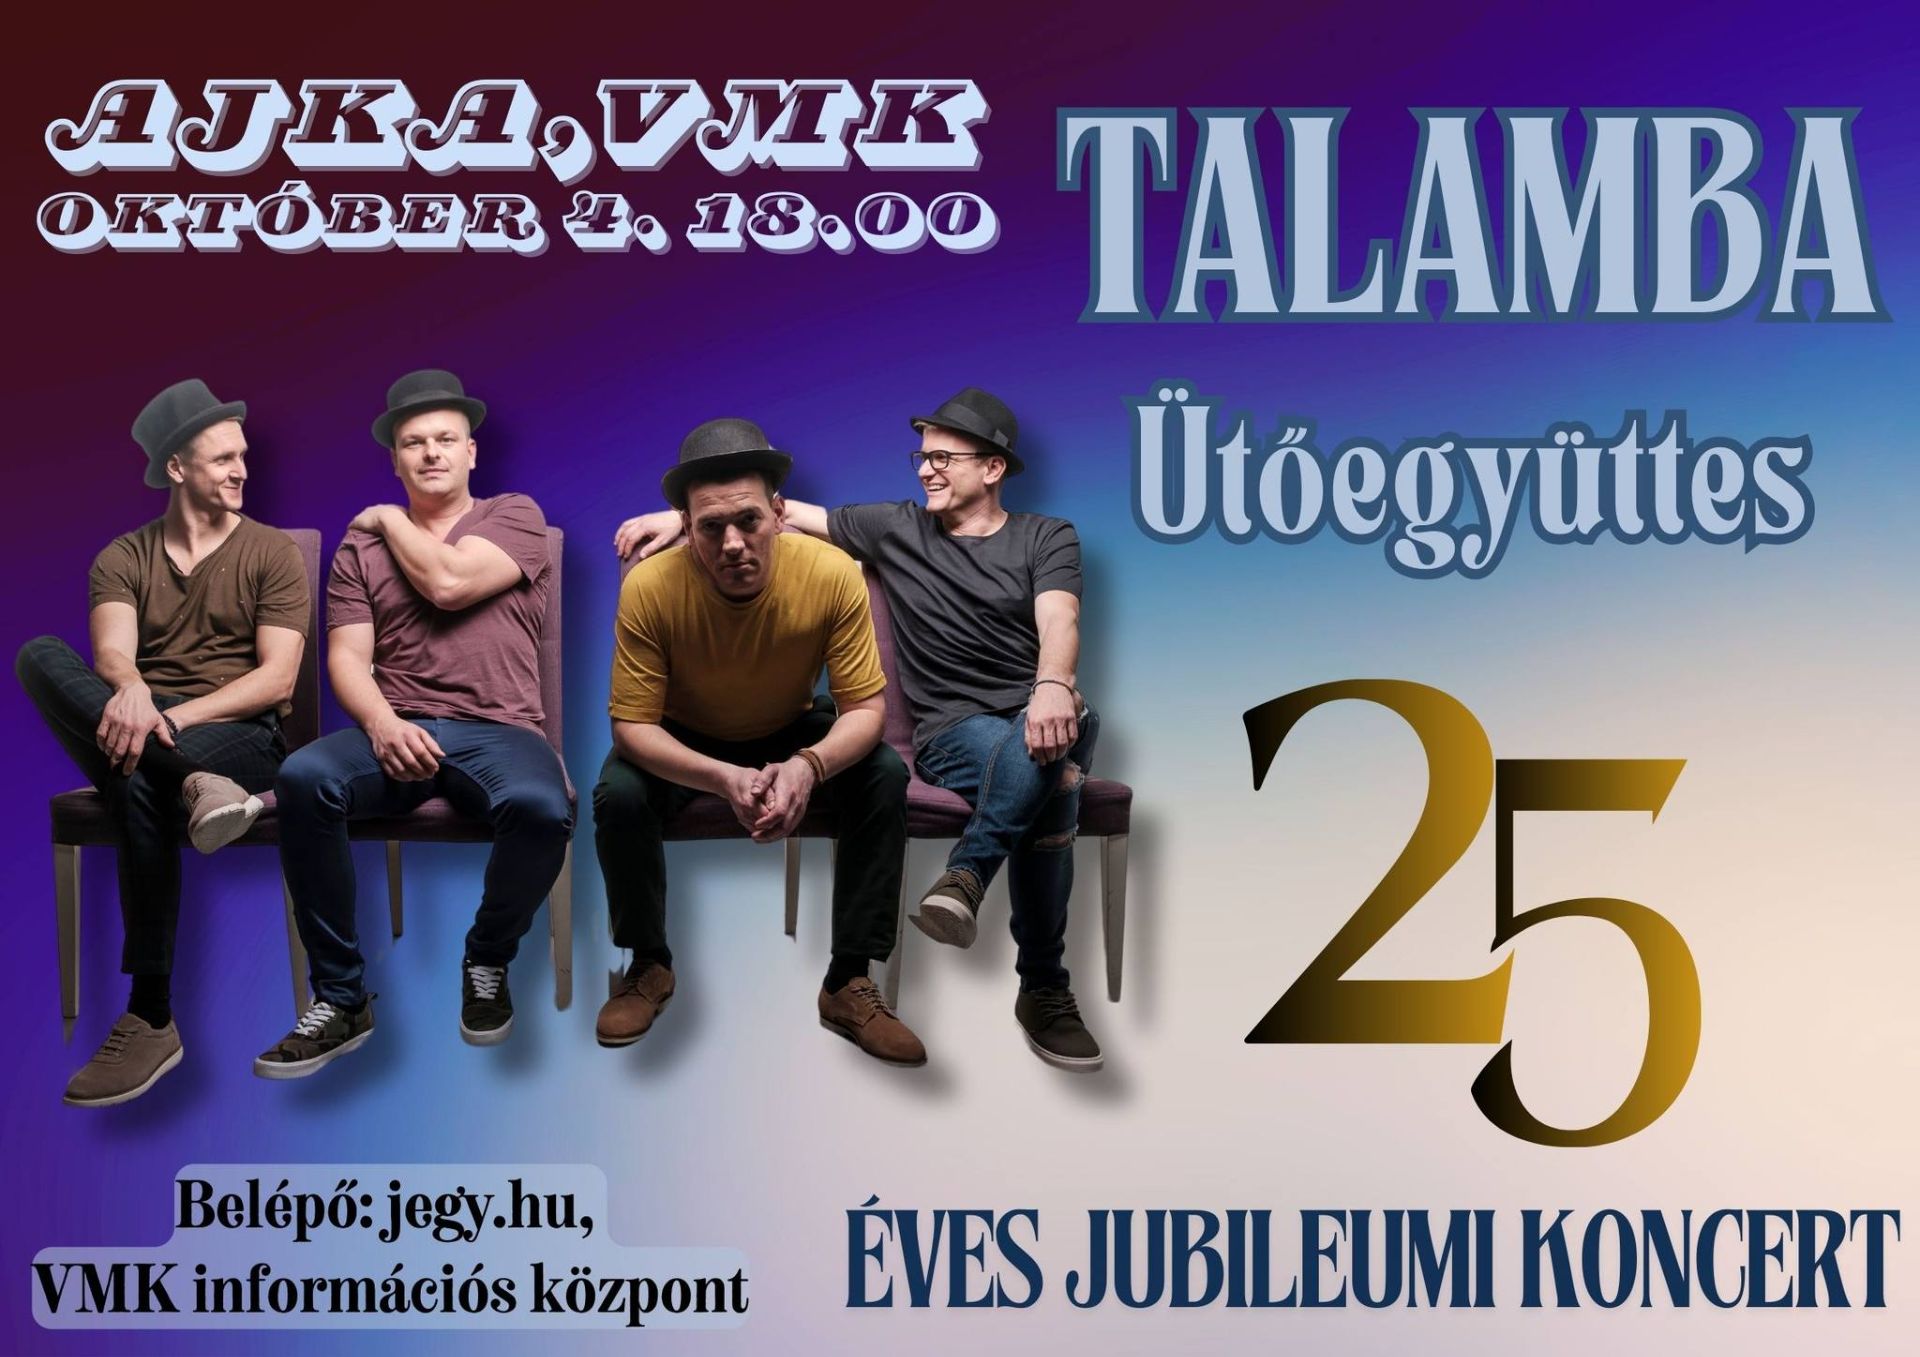 Talamba Ütőegyüttes 25 éves Jubileumi koncert 